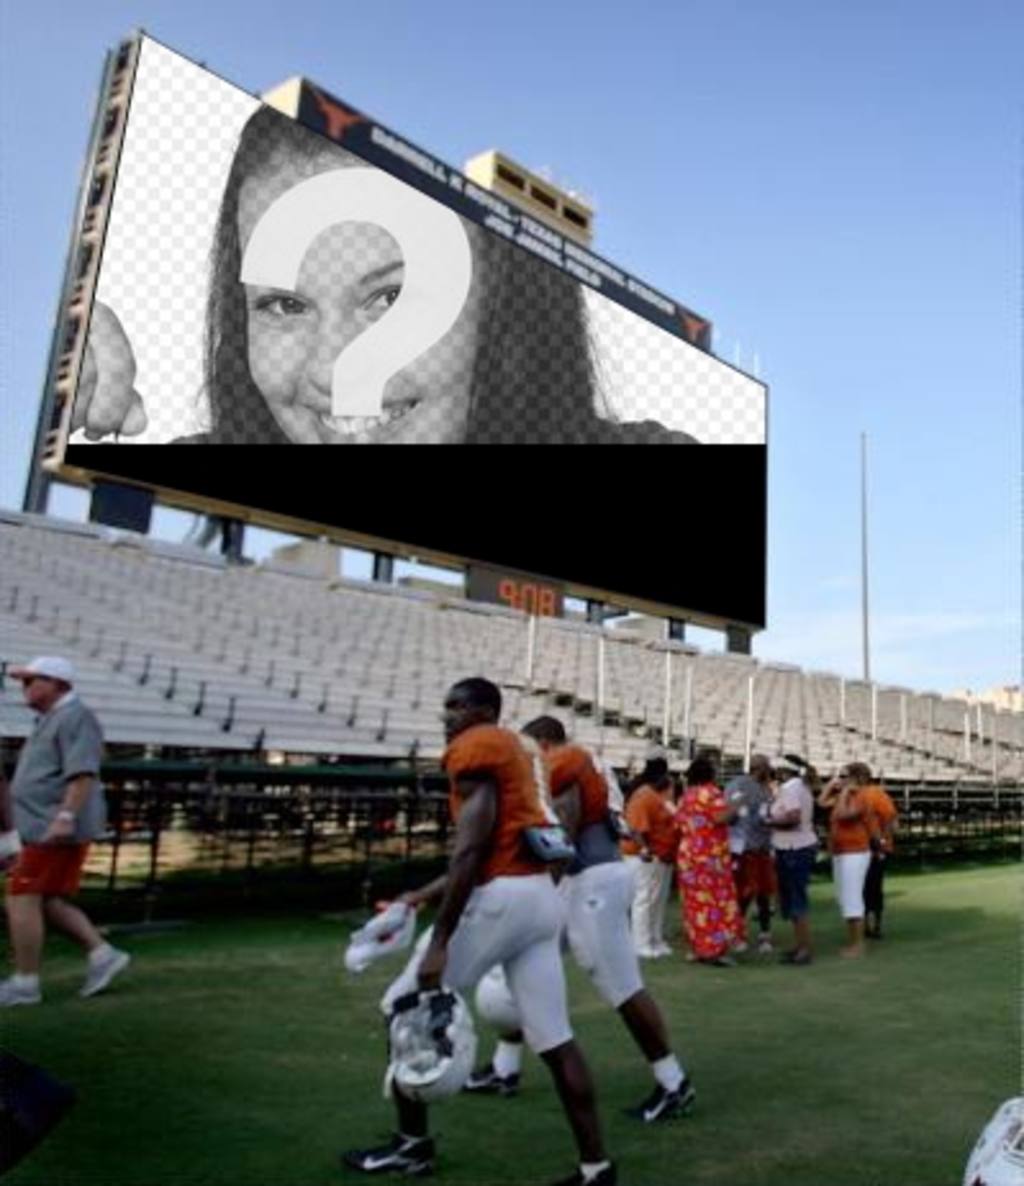 Dans ce photomontage, votre photo sera affichée sur le grand écran dans un stade de football, où les gens, y compris les..